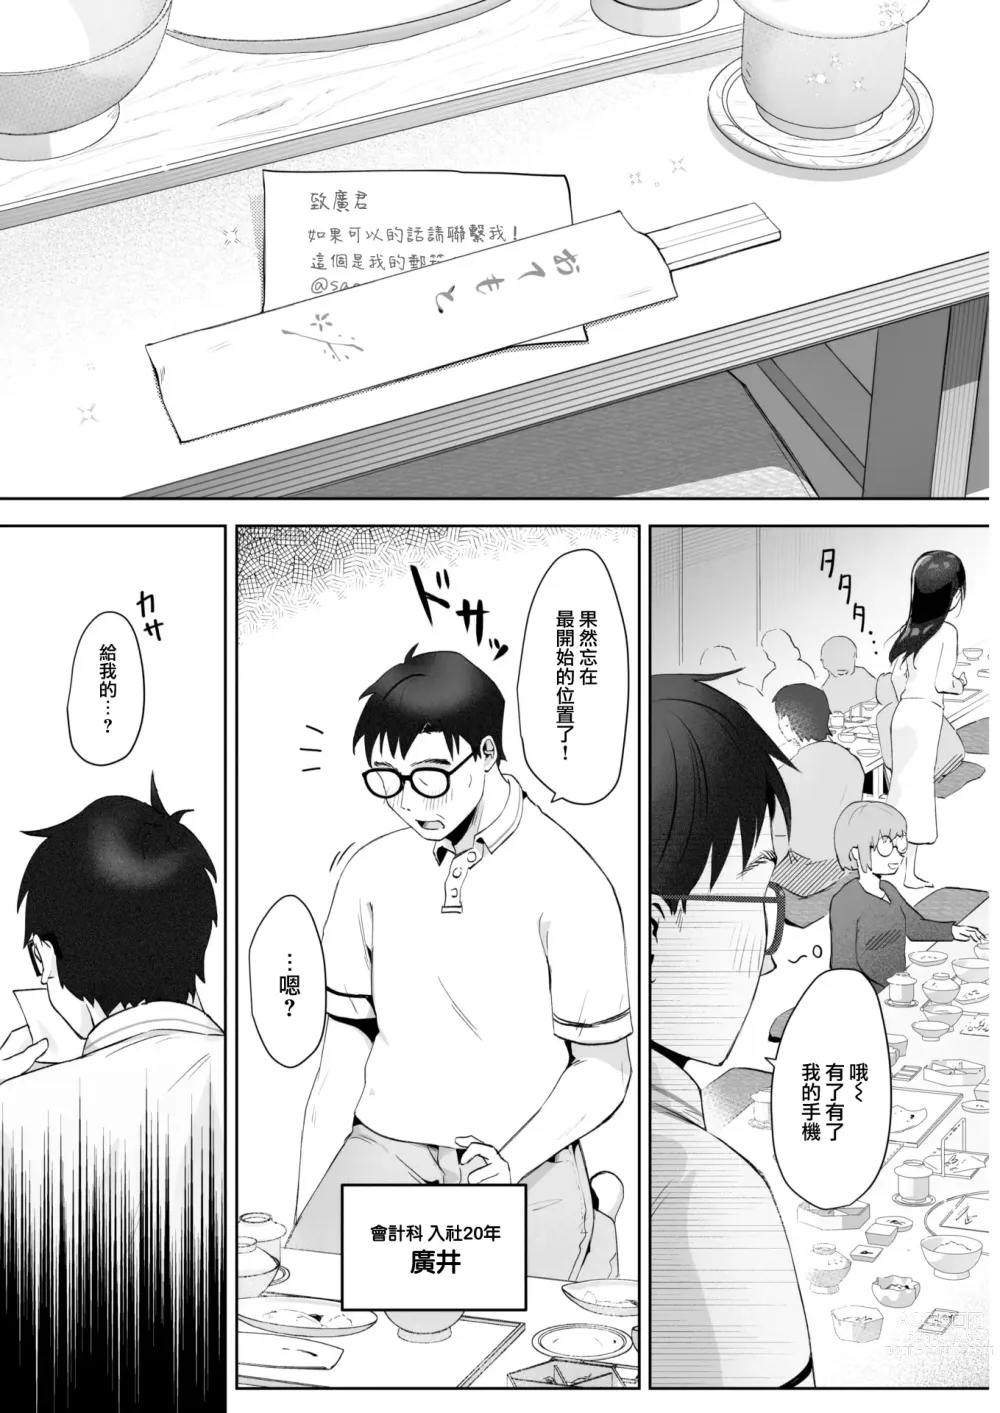 Page 5 of manga Koibumi Confusion